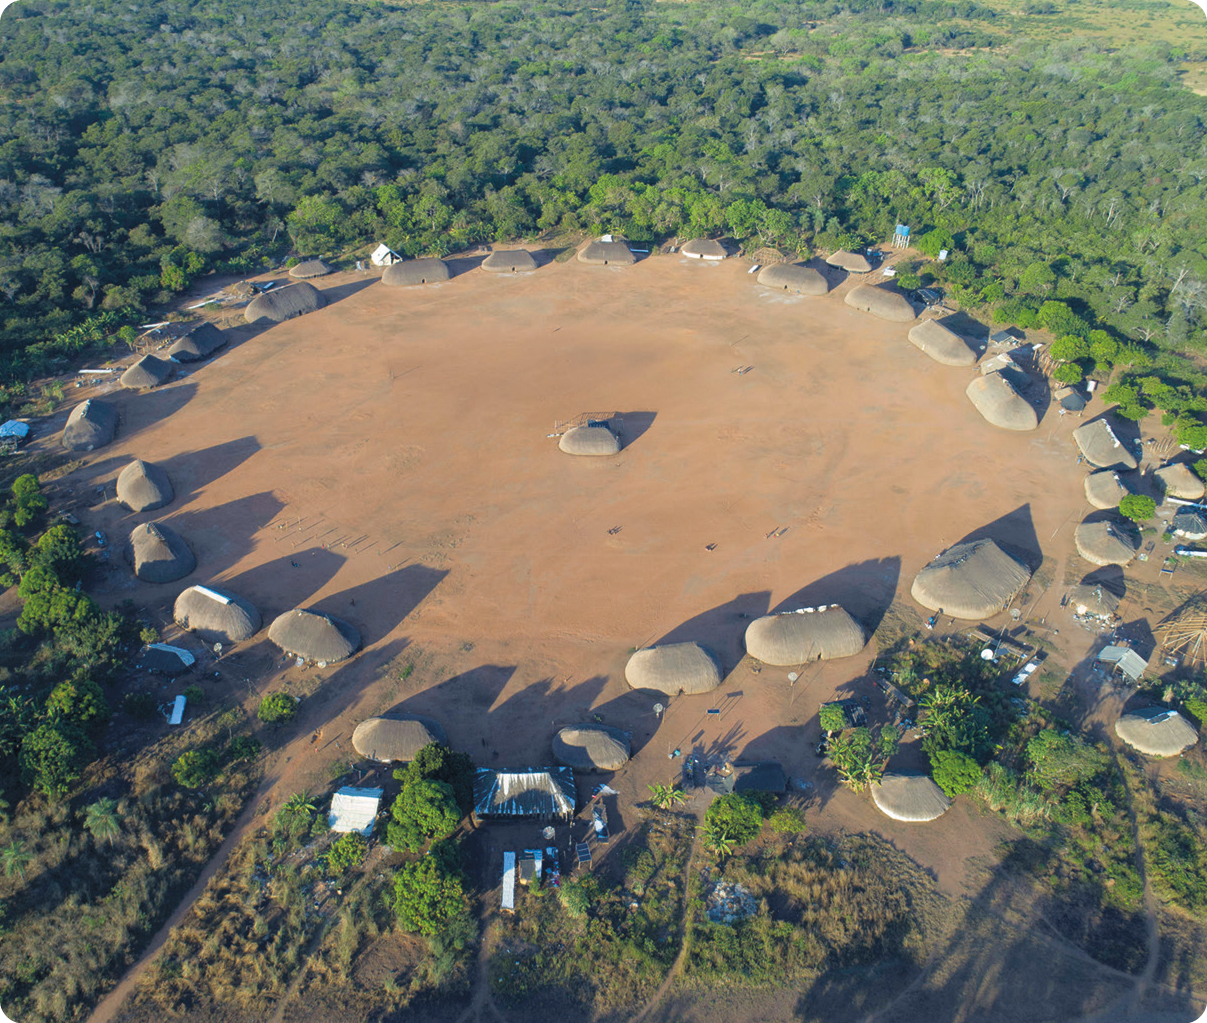 Fotografia. Vista aérea de moradias indígenas dispostas em círculo, com uma moradia no centro. Ao redor, vegetação.